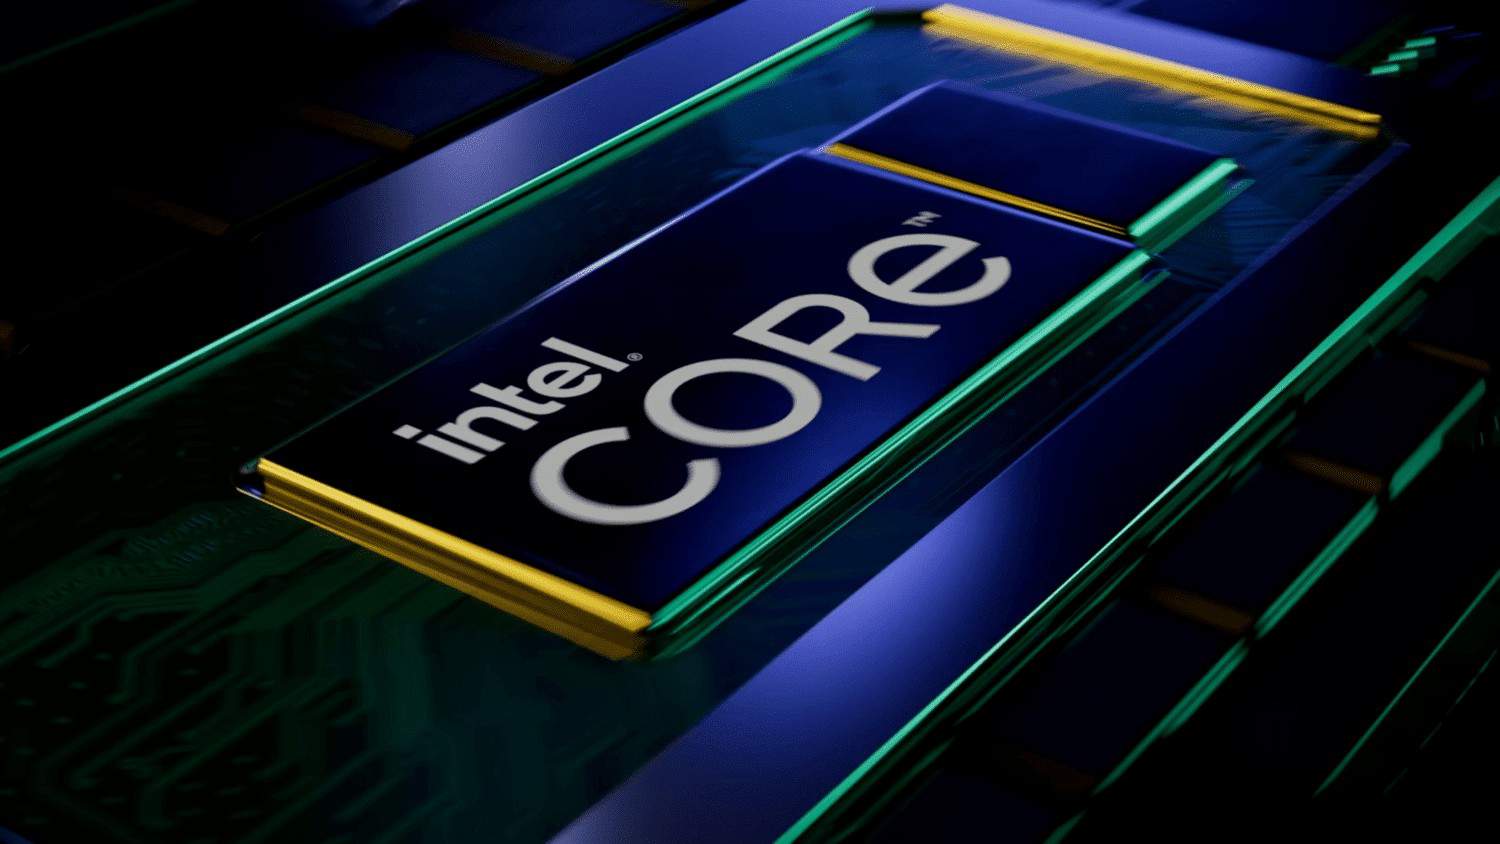 Intelが第13世代Raptor Lake CPUを2022年後半にデスクトップ・モバイル共に発売することを再確認